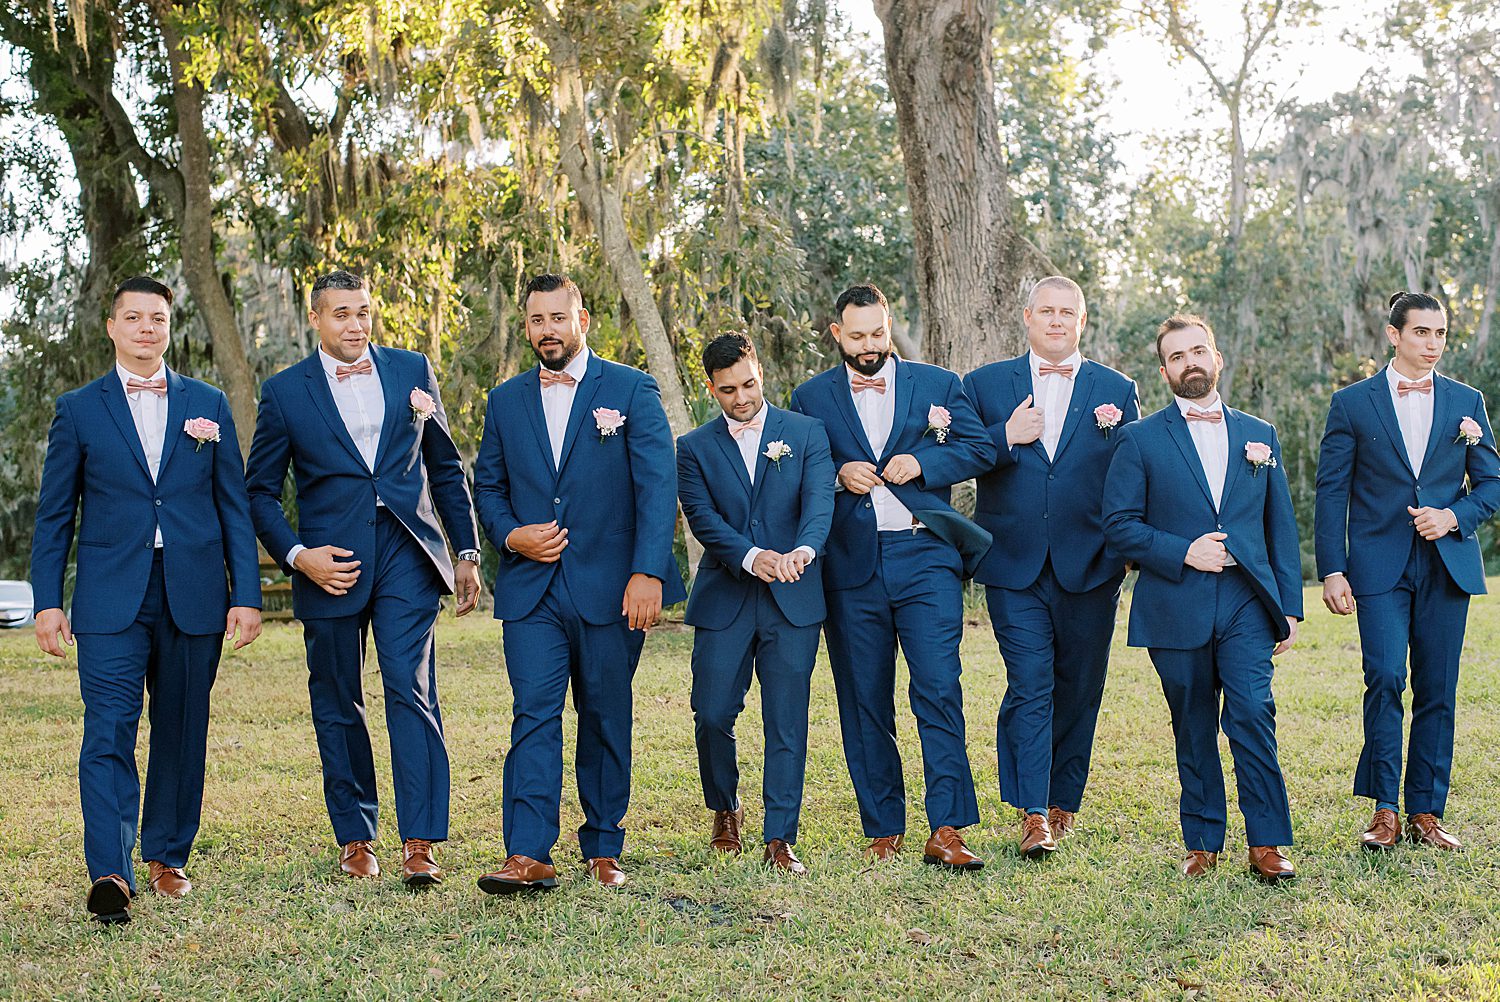 groom walks with groomsmen in navy suits